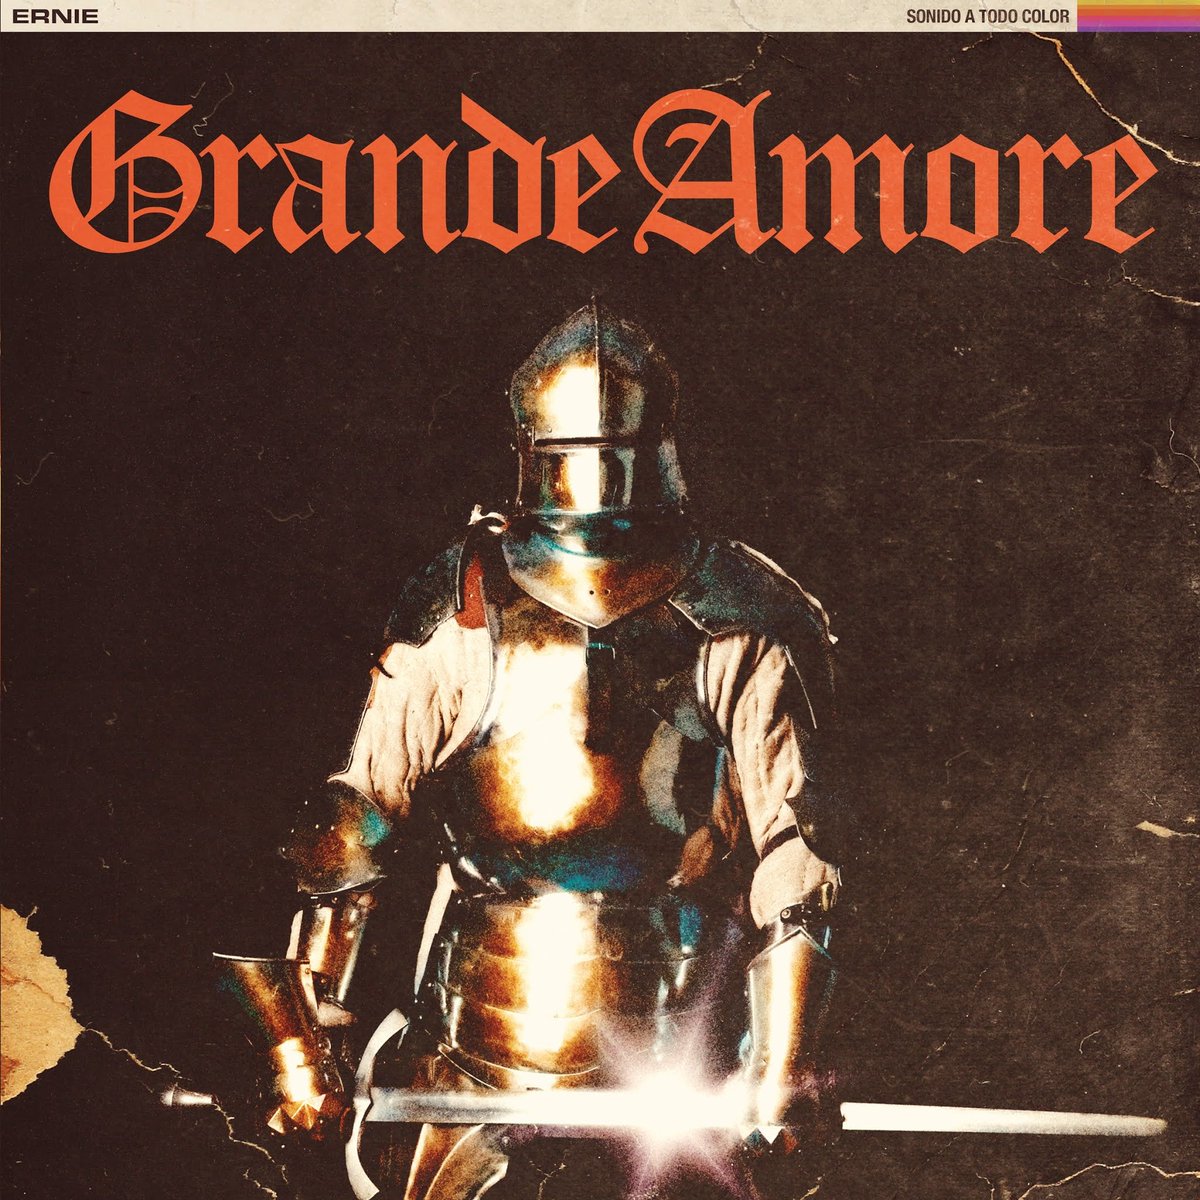 El álbum homónimo de Grande Amore me parece de los mejores debuts nacionales de los últimos años.

Maravilloso electropunk gallego.